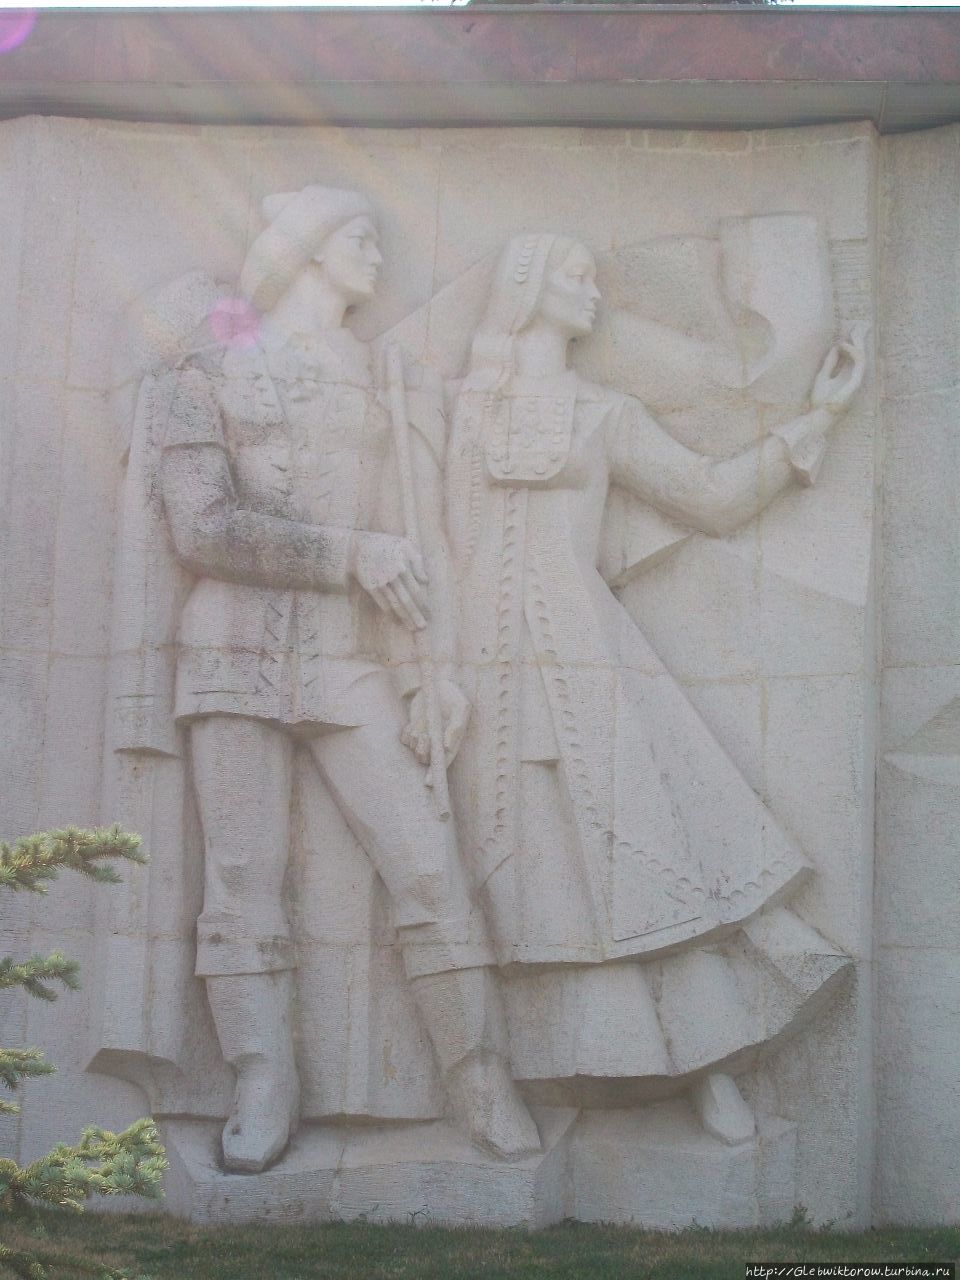 Прогулка к монументу дружбы Уфа, Россия